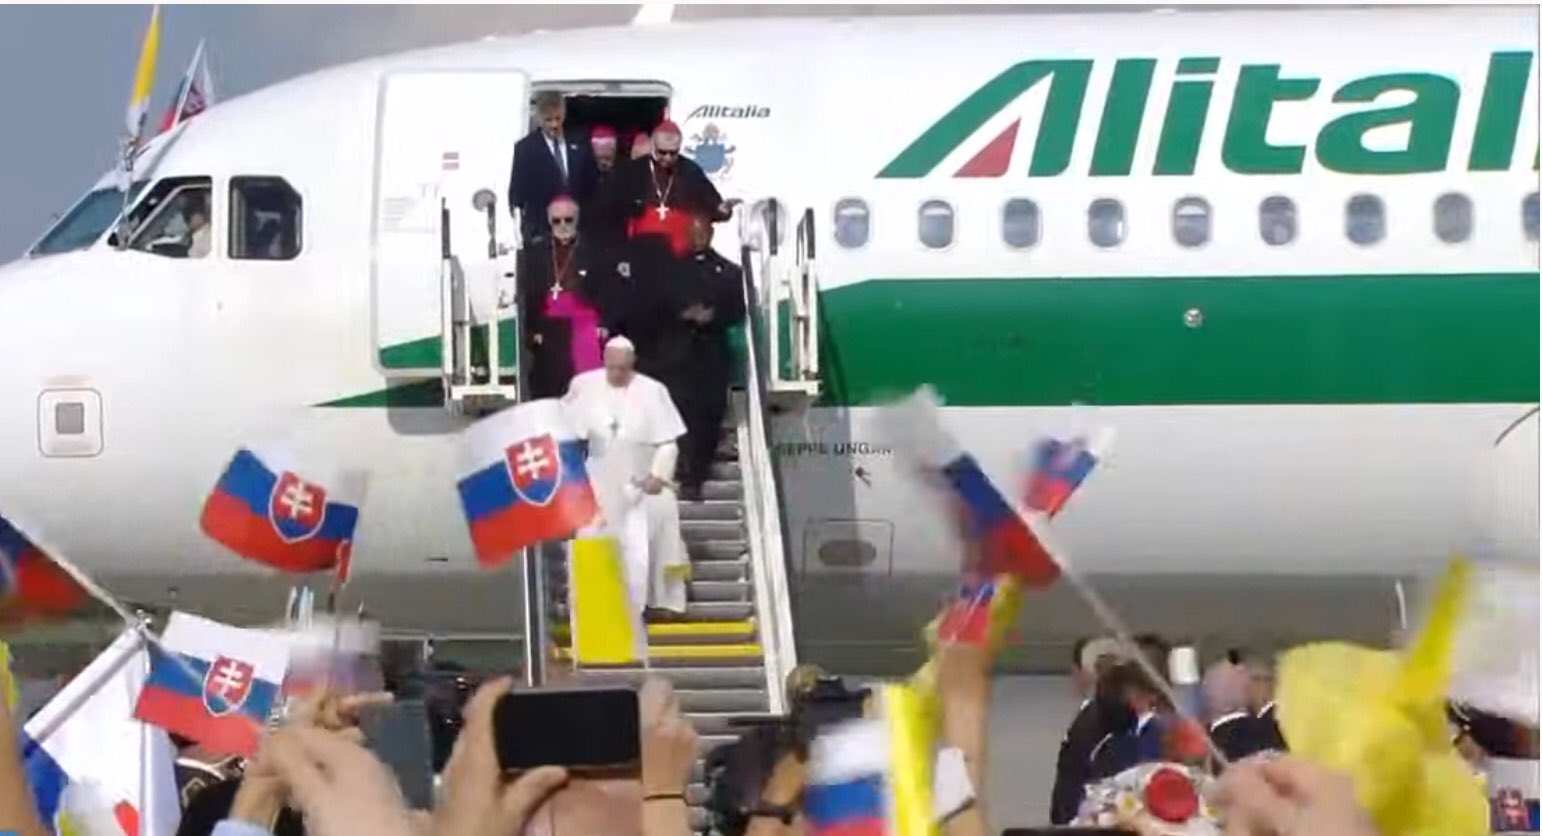 Arrivée du Pape François en Slovaquie